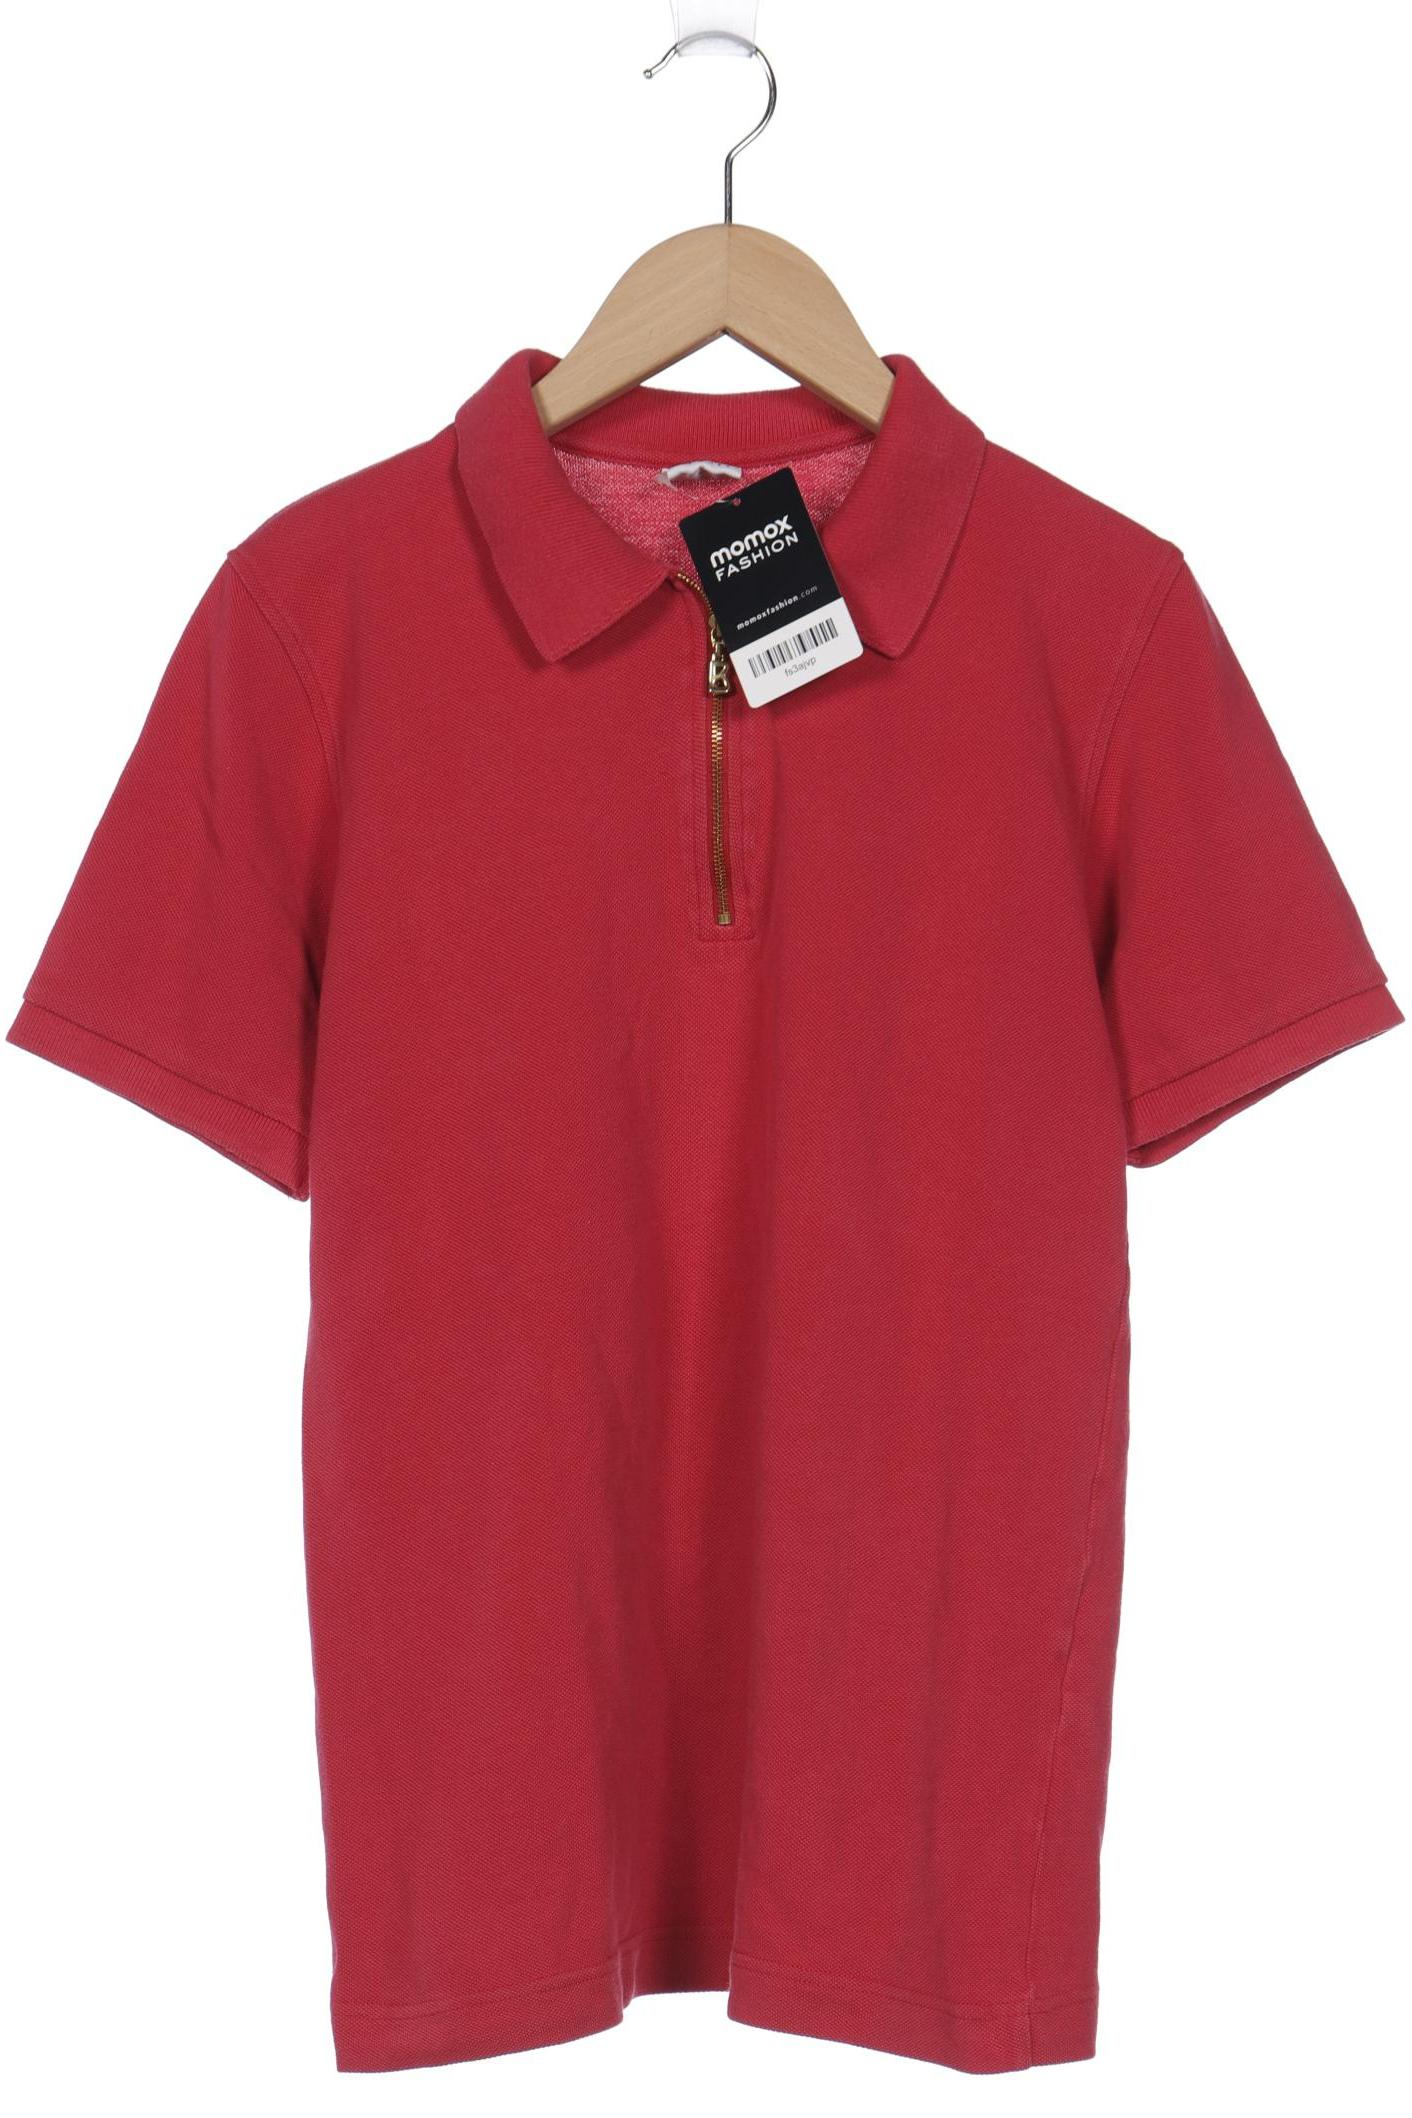 Bogner Damen Poloshirt, pink, Gr. 36 von Bogner